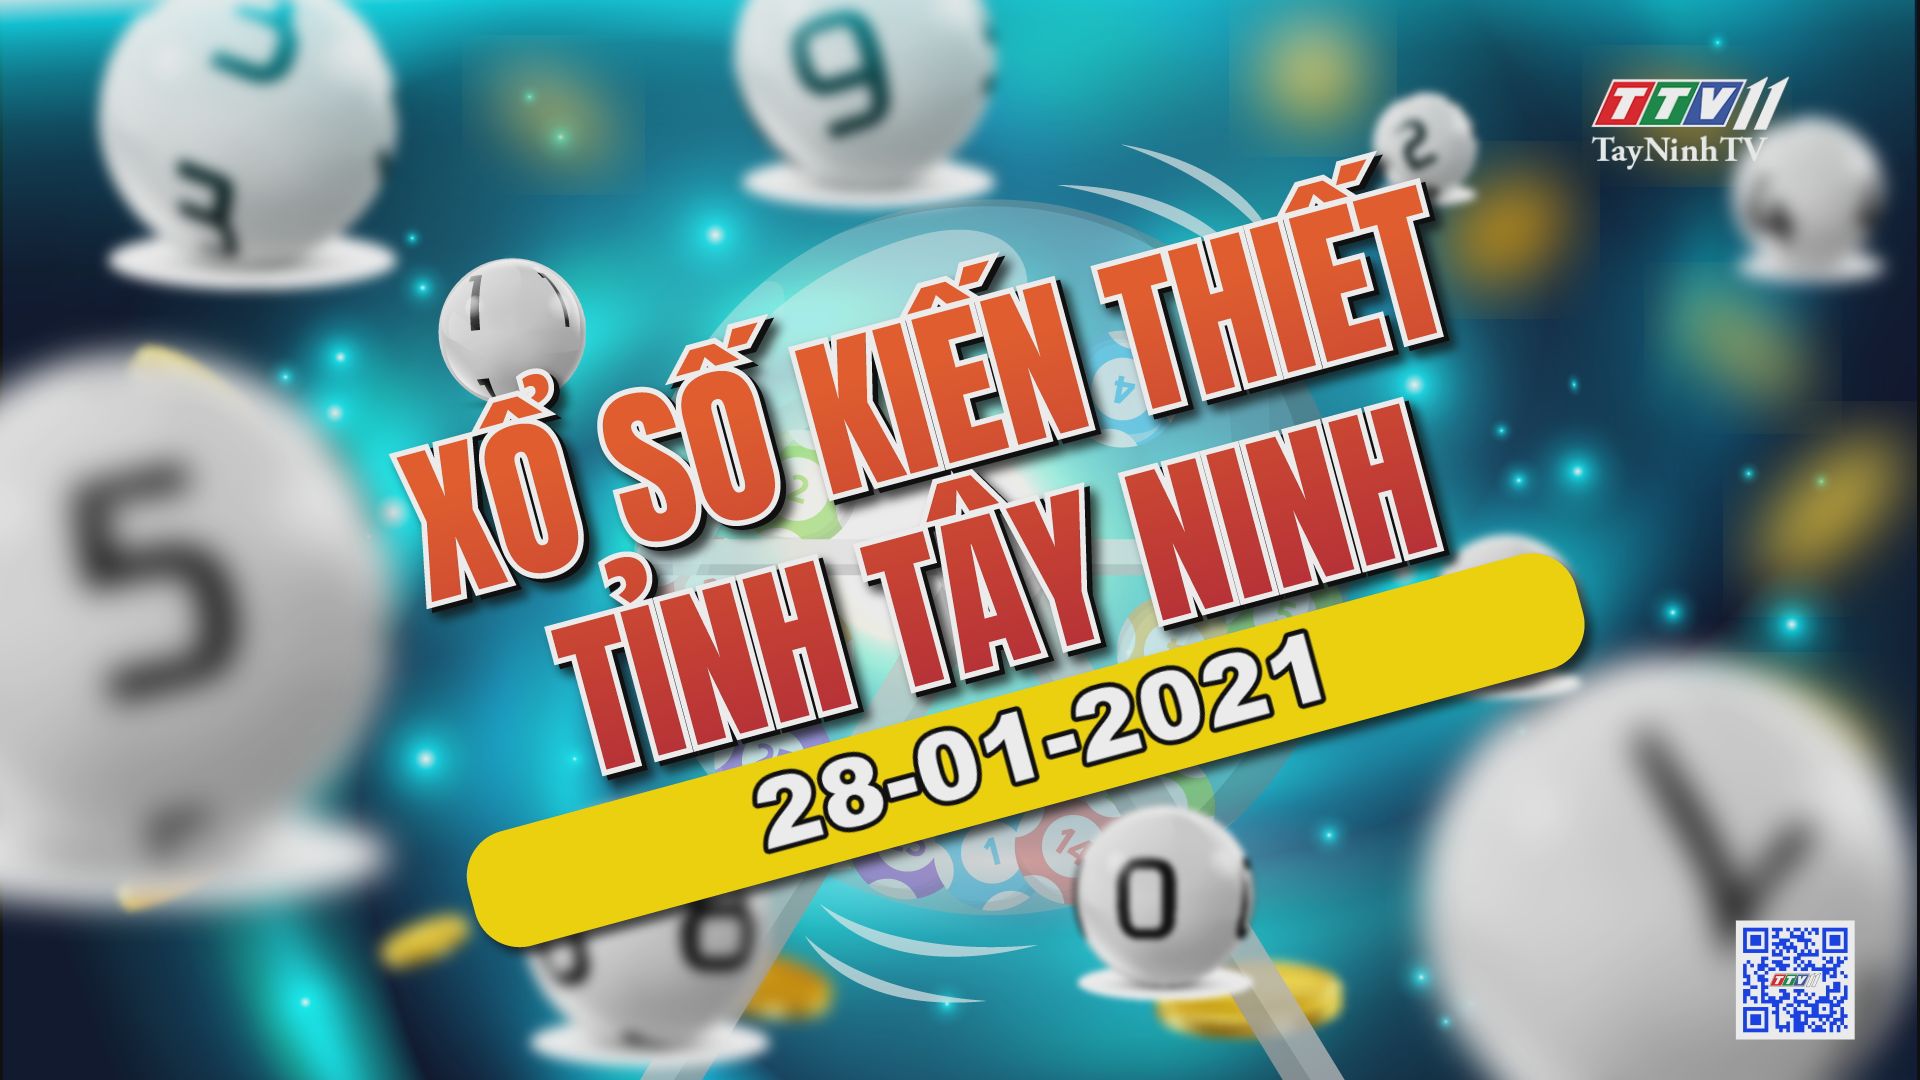 Trực tiếp Xổ số Tây Ninh ngày 28-01-2021 | TayNinhTVE 